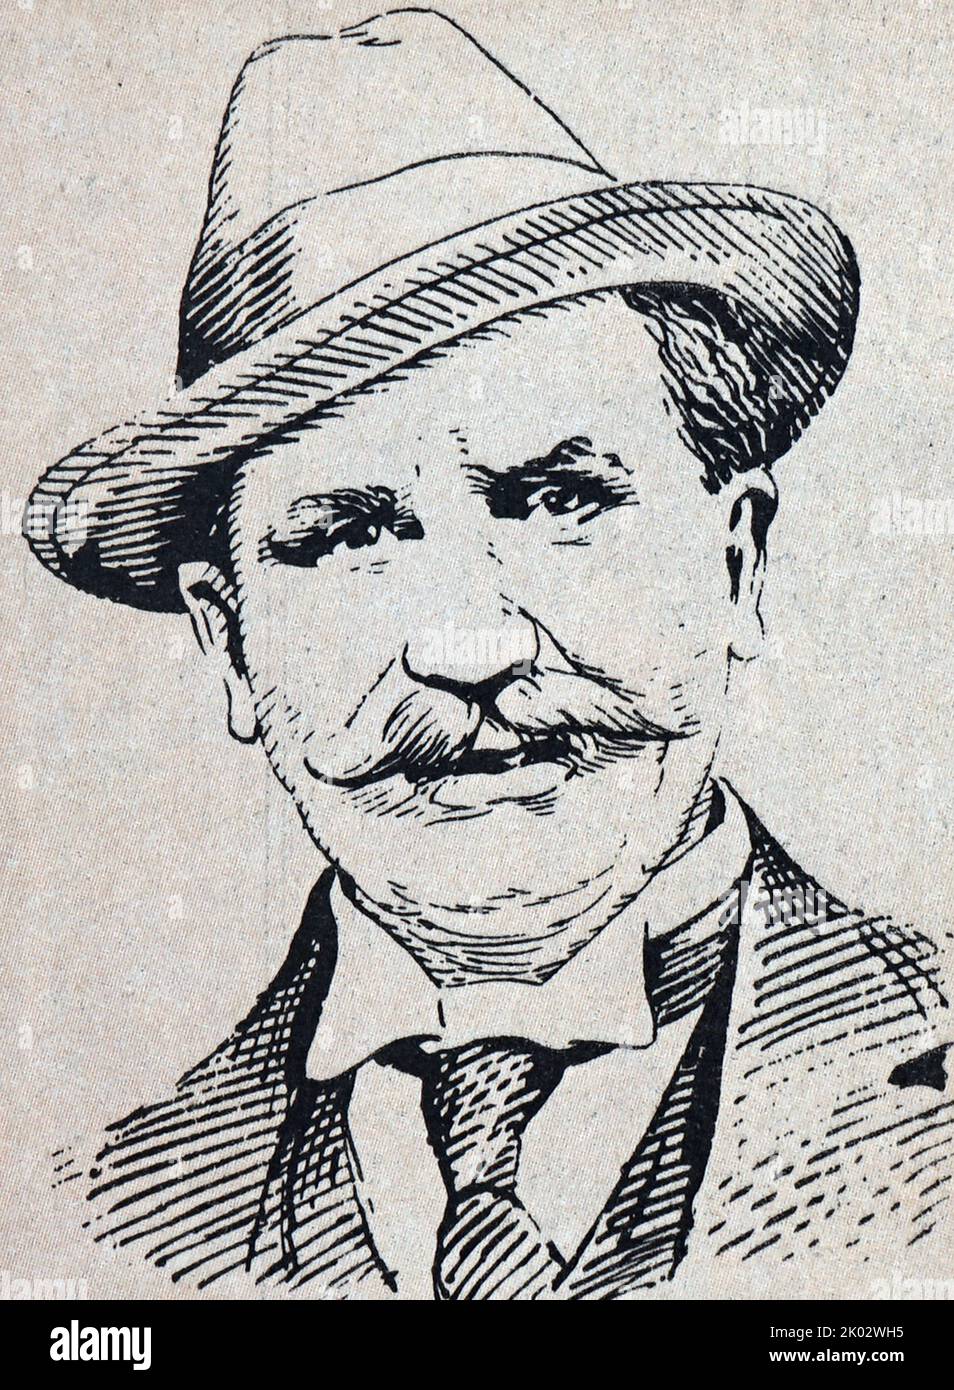 Tom Mann (1856-1941). Mineur, puis mécanicien, membre de l'un des syndicats les plus aristocratiques. Par la suite, il est devenu l'un des co-fondateurs du Parti communiste britannique. Banque D'Images